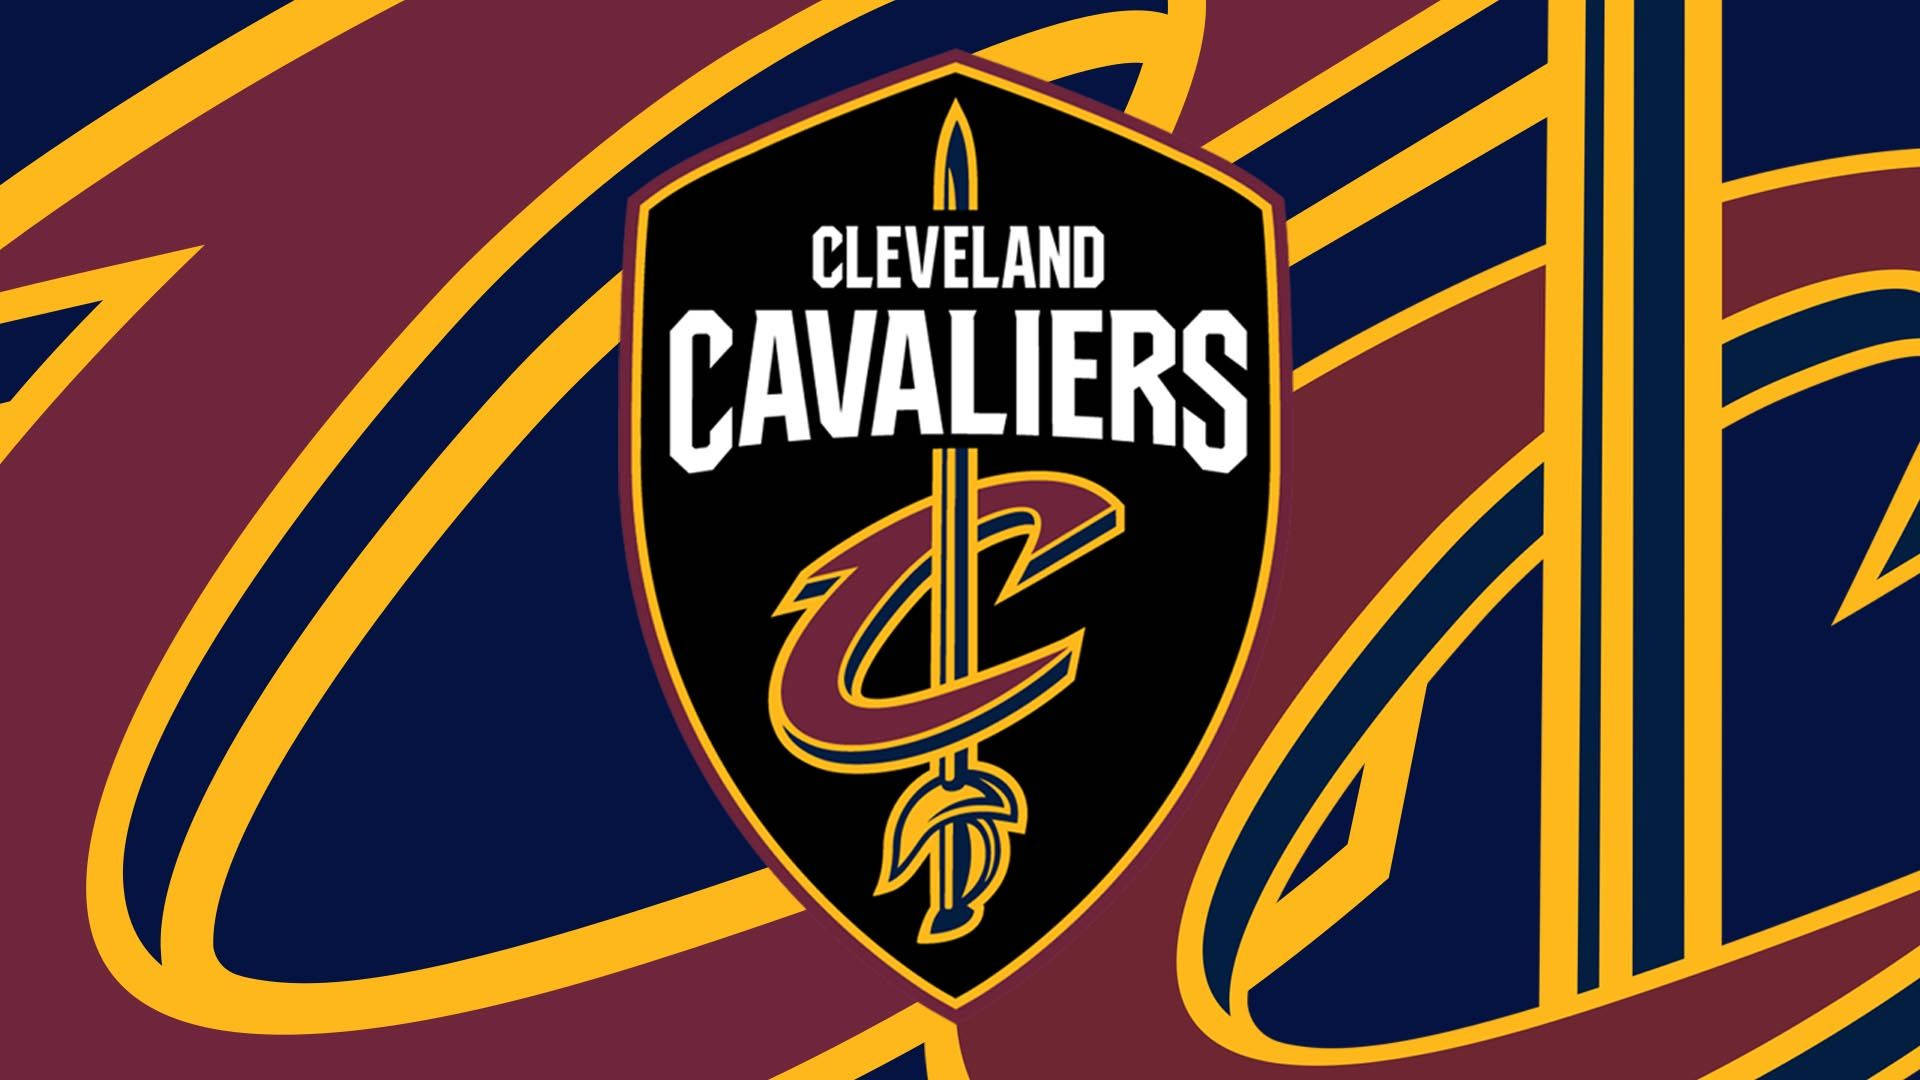 Cleveland Cavaliers Modern Logo Design Background